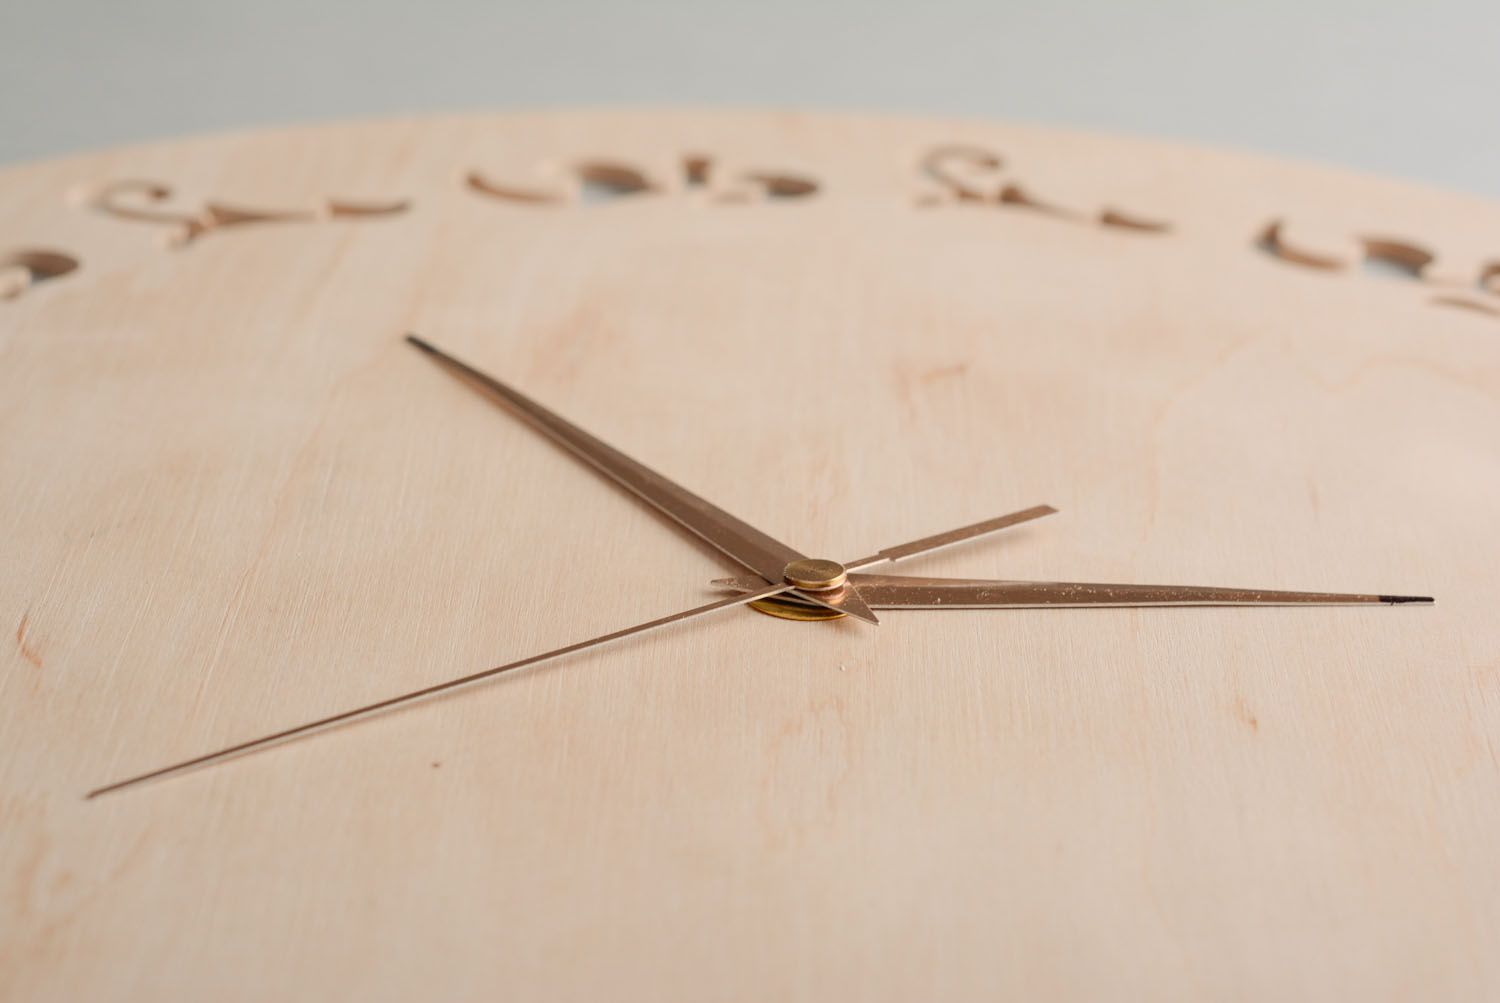 Base de madera para el reloj Calado foto 4